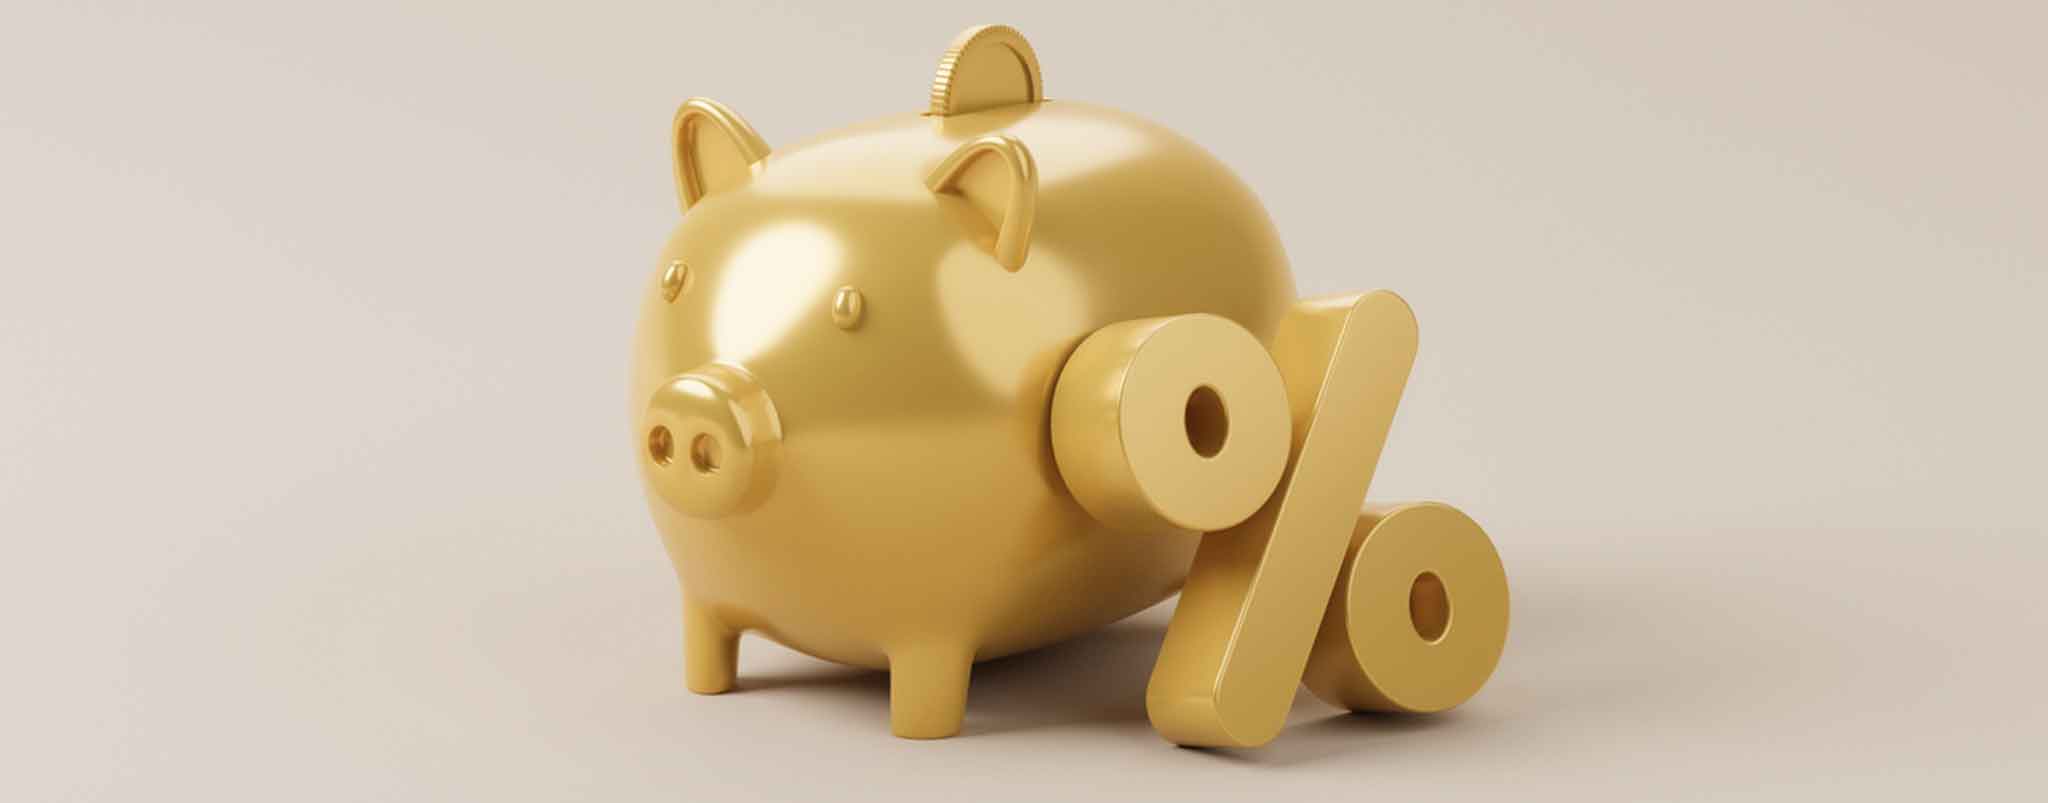 Persoonlijke lening of sparen tijdens stijgende rentes: wat is verstandig?